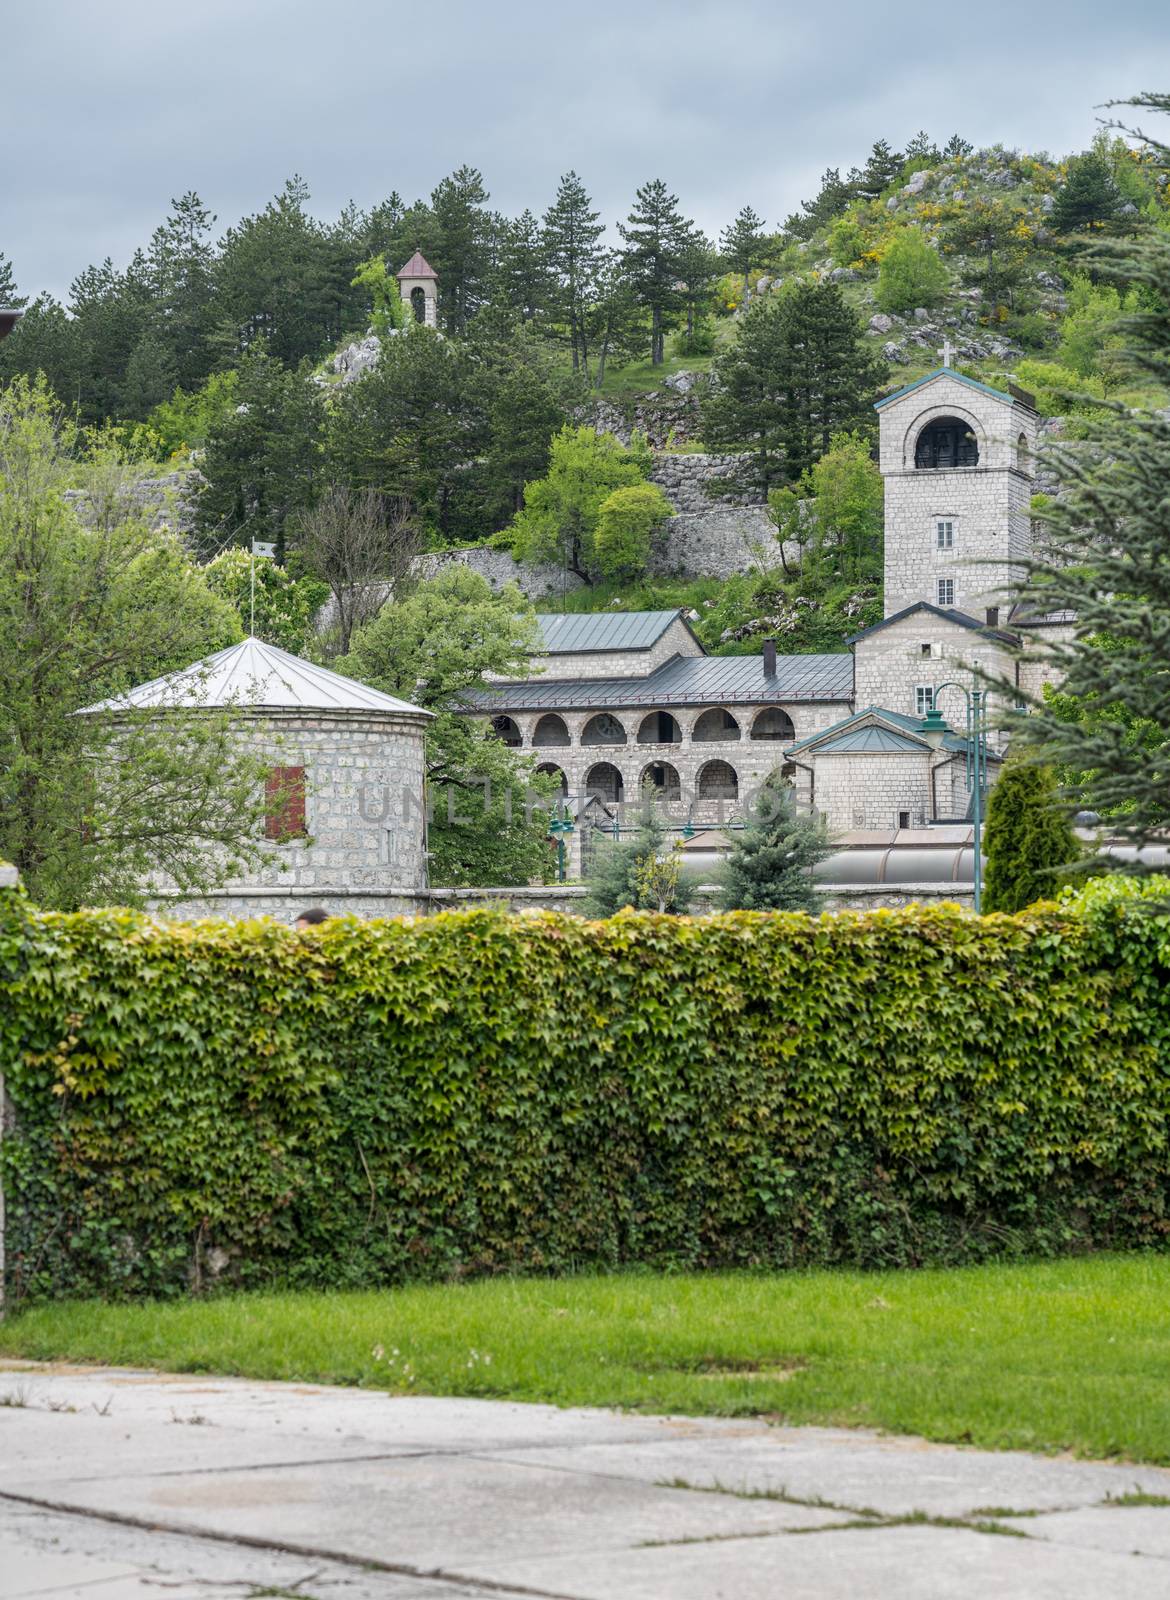 Monastery in Royal Gardens by King Nikola's Palace in Cetinje near Kotor